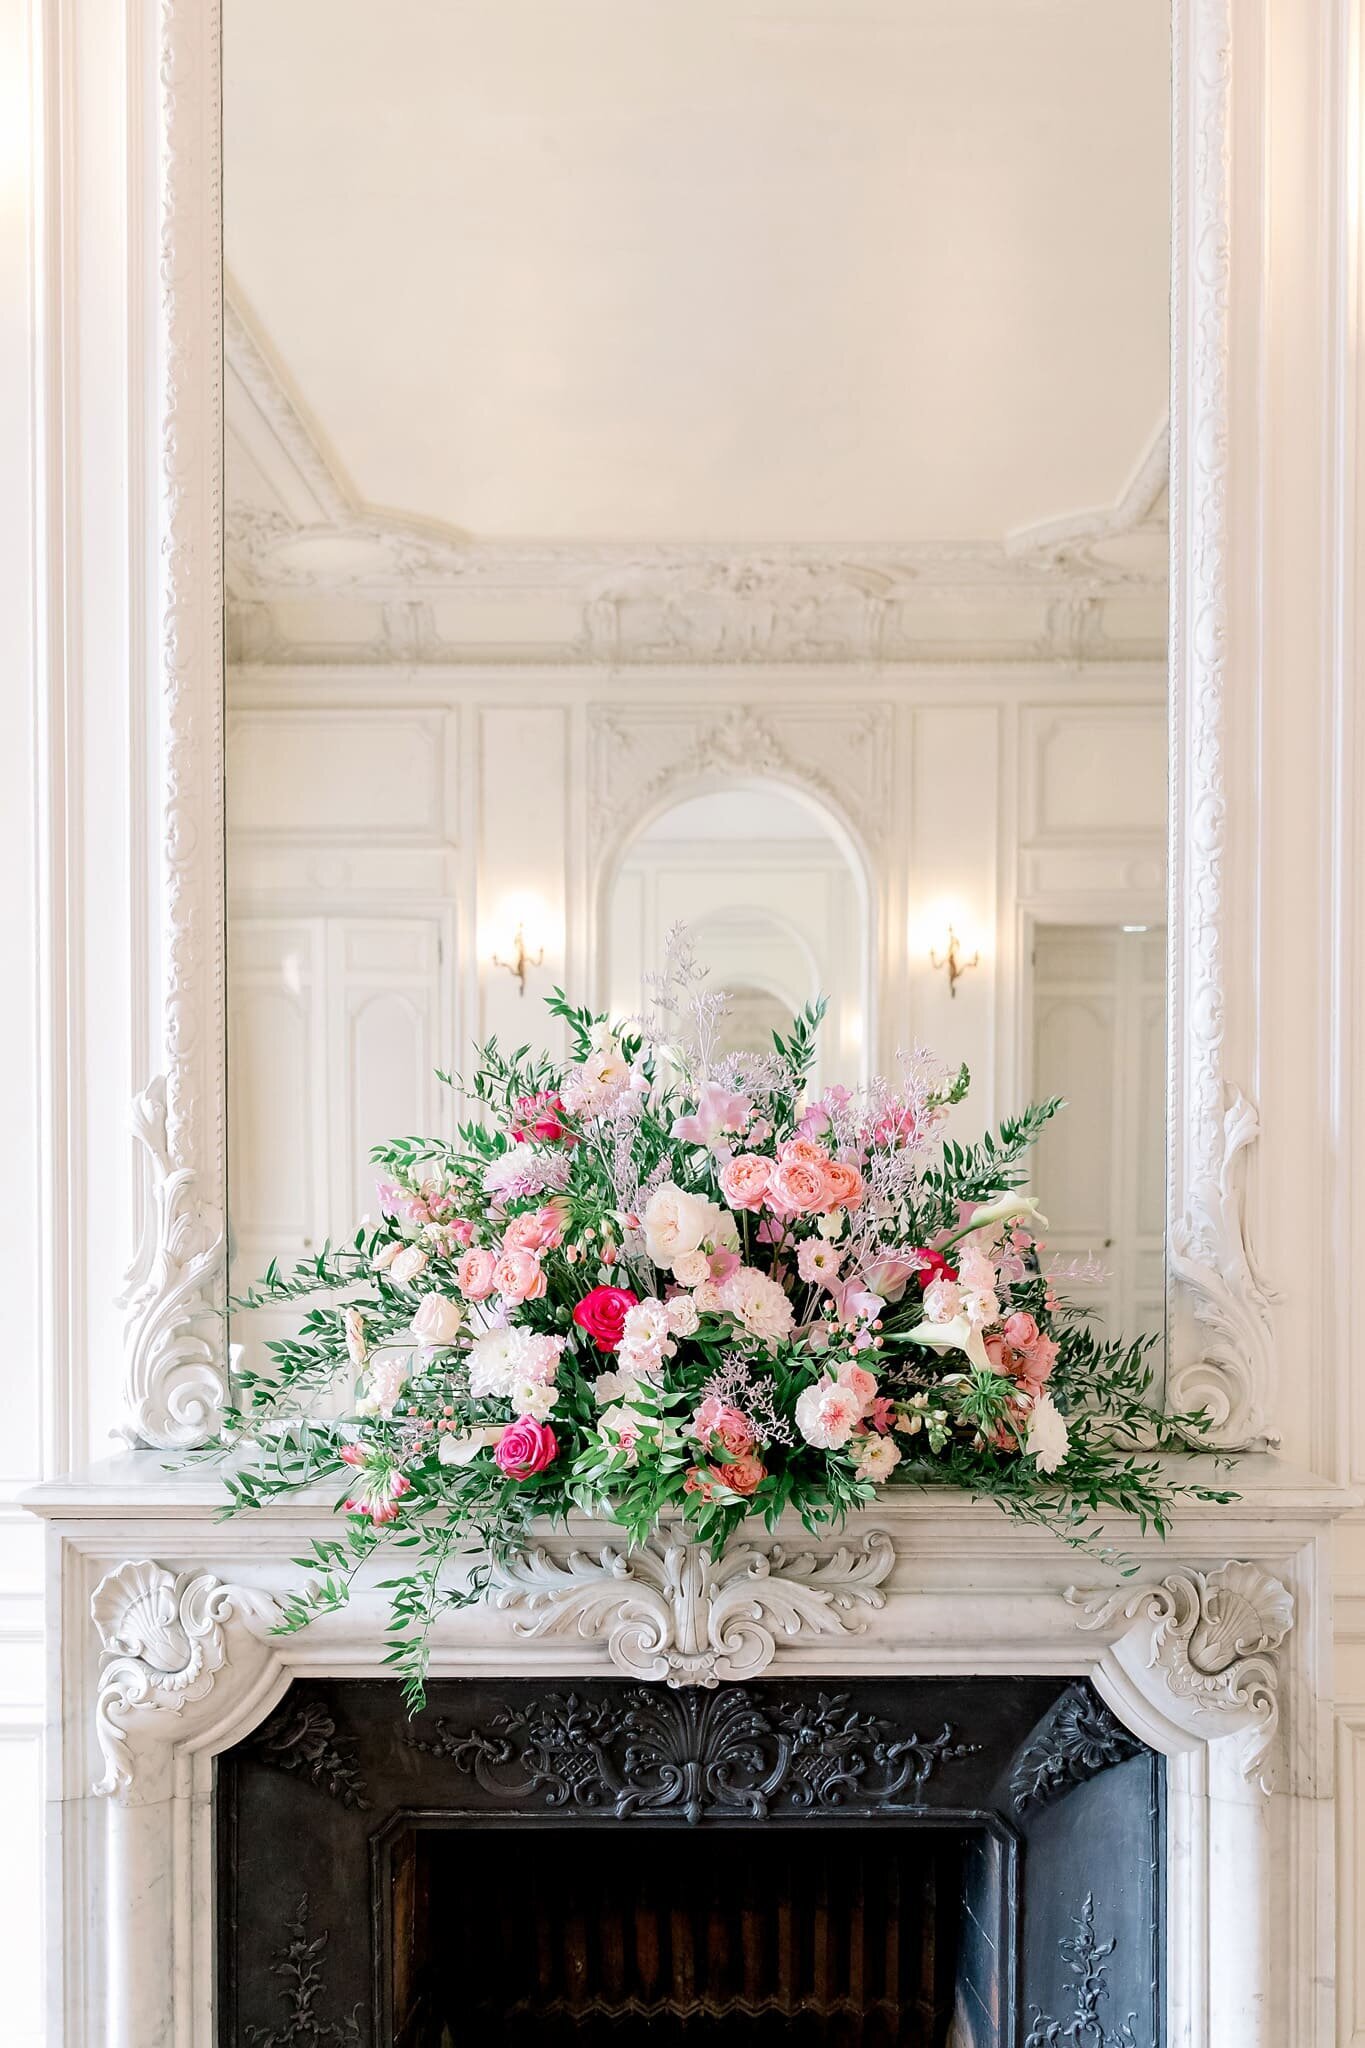 decoration-florale-cheminee-chateau-a-la-francaise